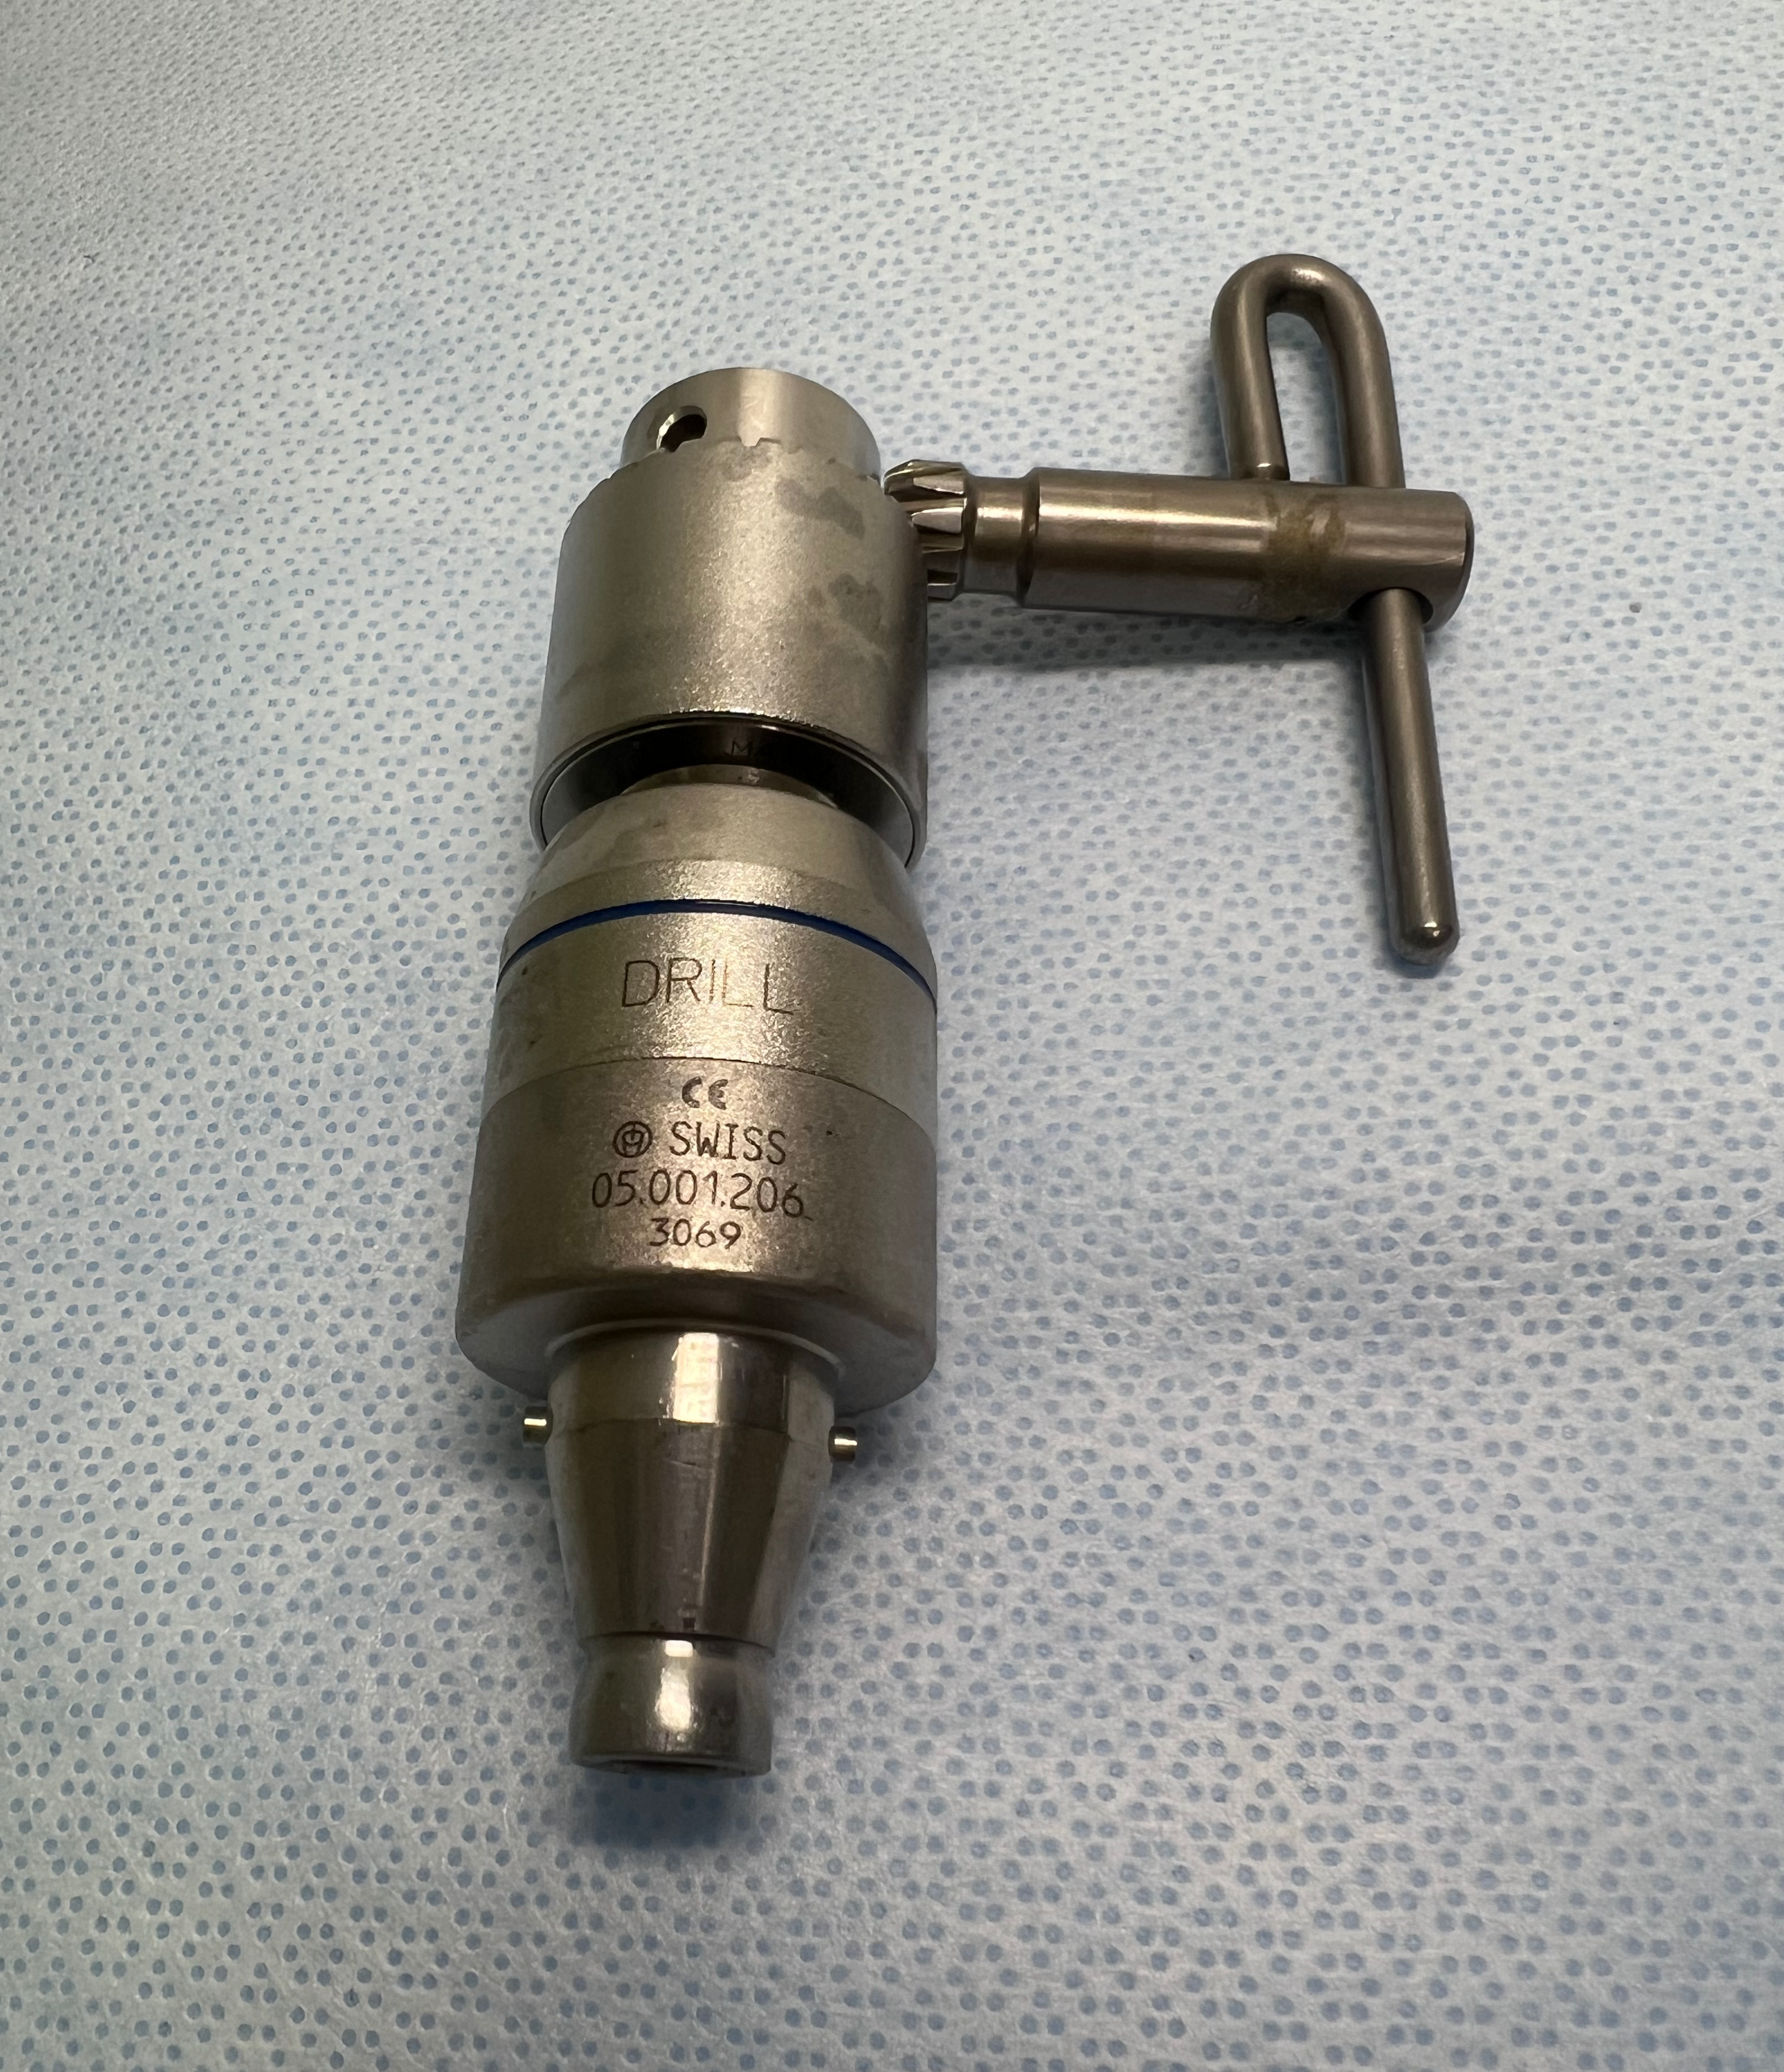 05.001.206 TRS Drill Chuck w/ Key (Up to 7.3mm Diameter) US1258